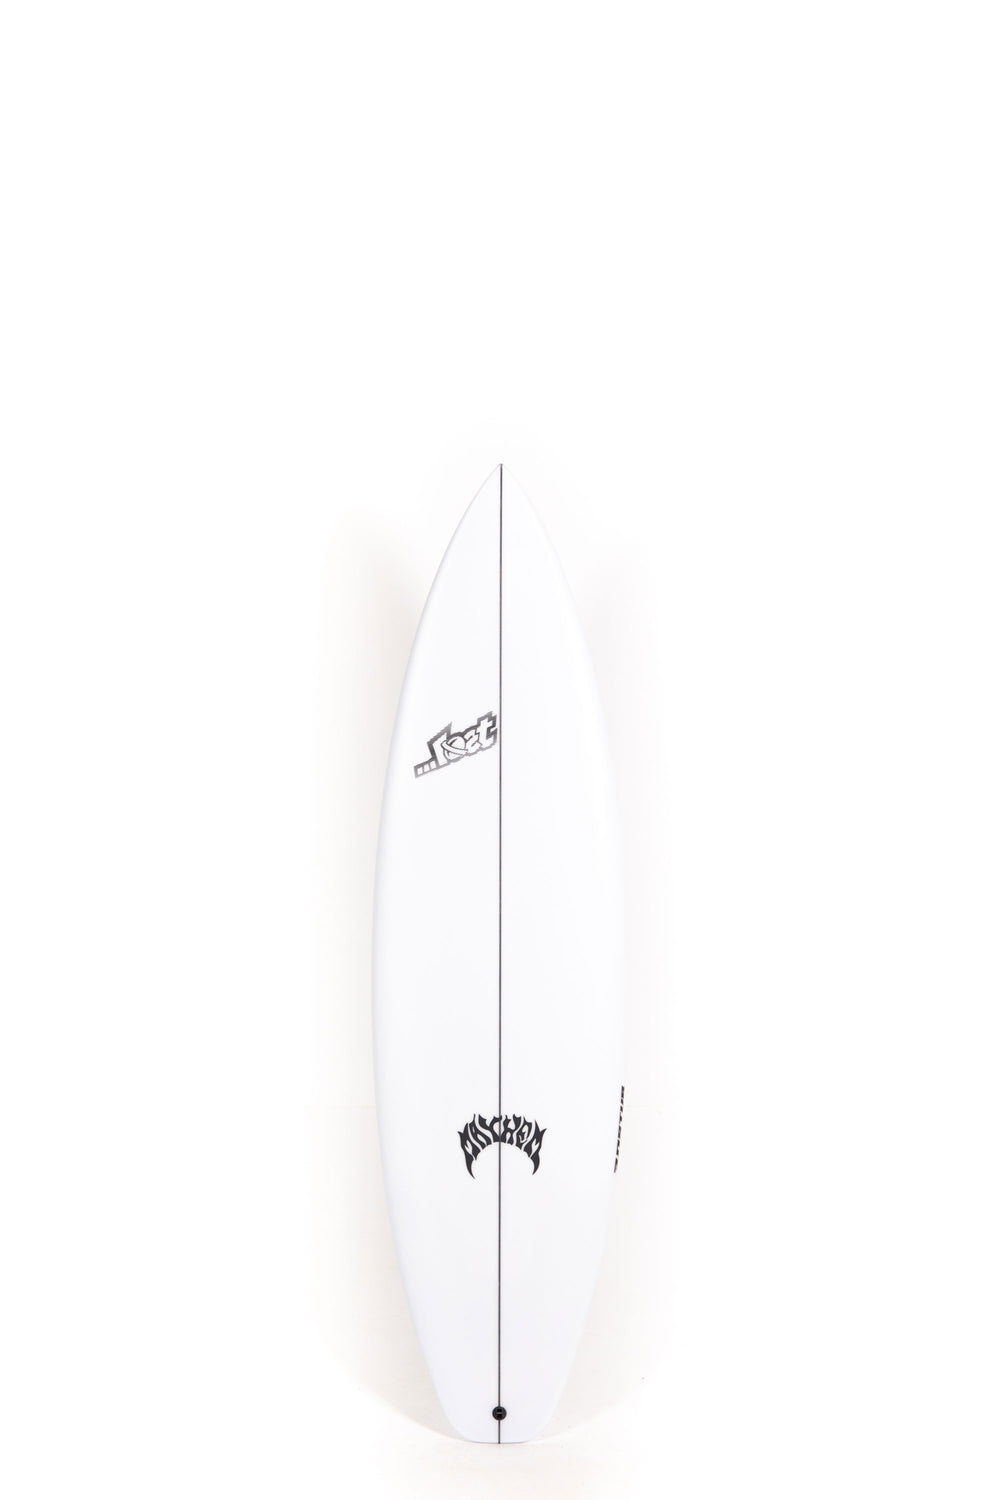 Lost Surfboard - 3.0_STUB DRIVER by Matt Biolos - 6’2” x 19.88